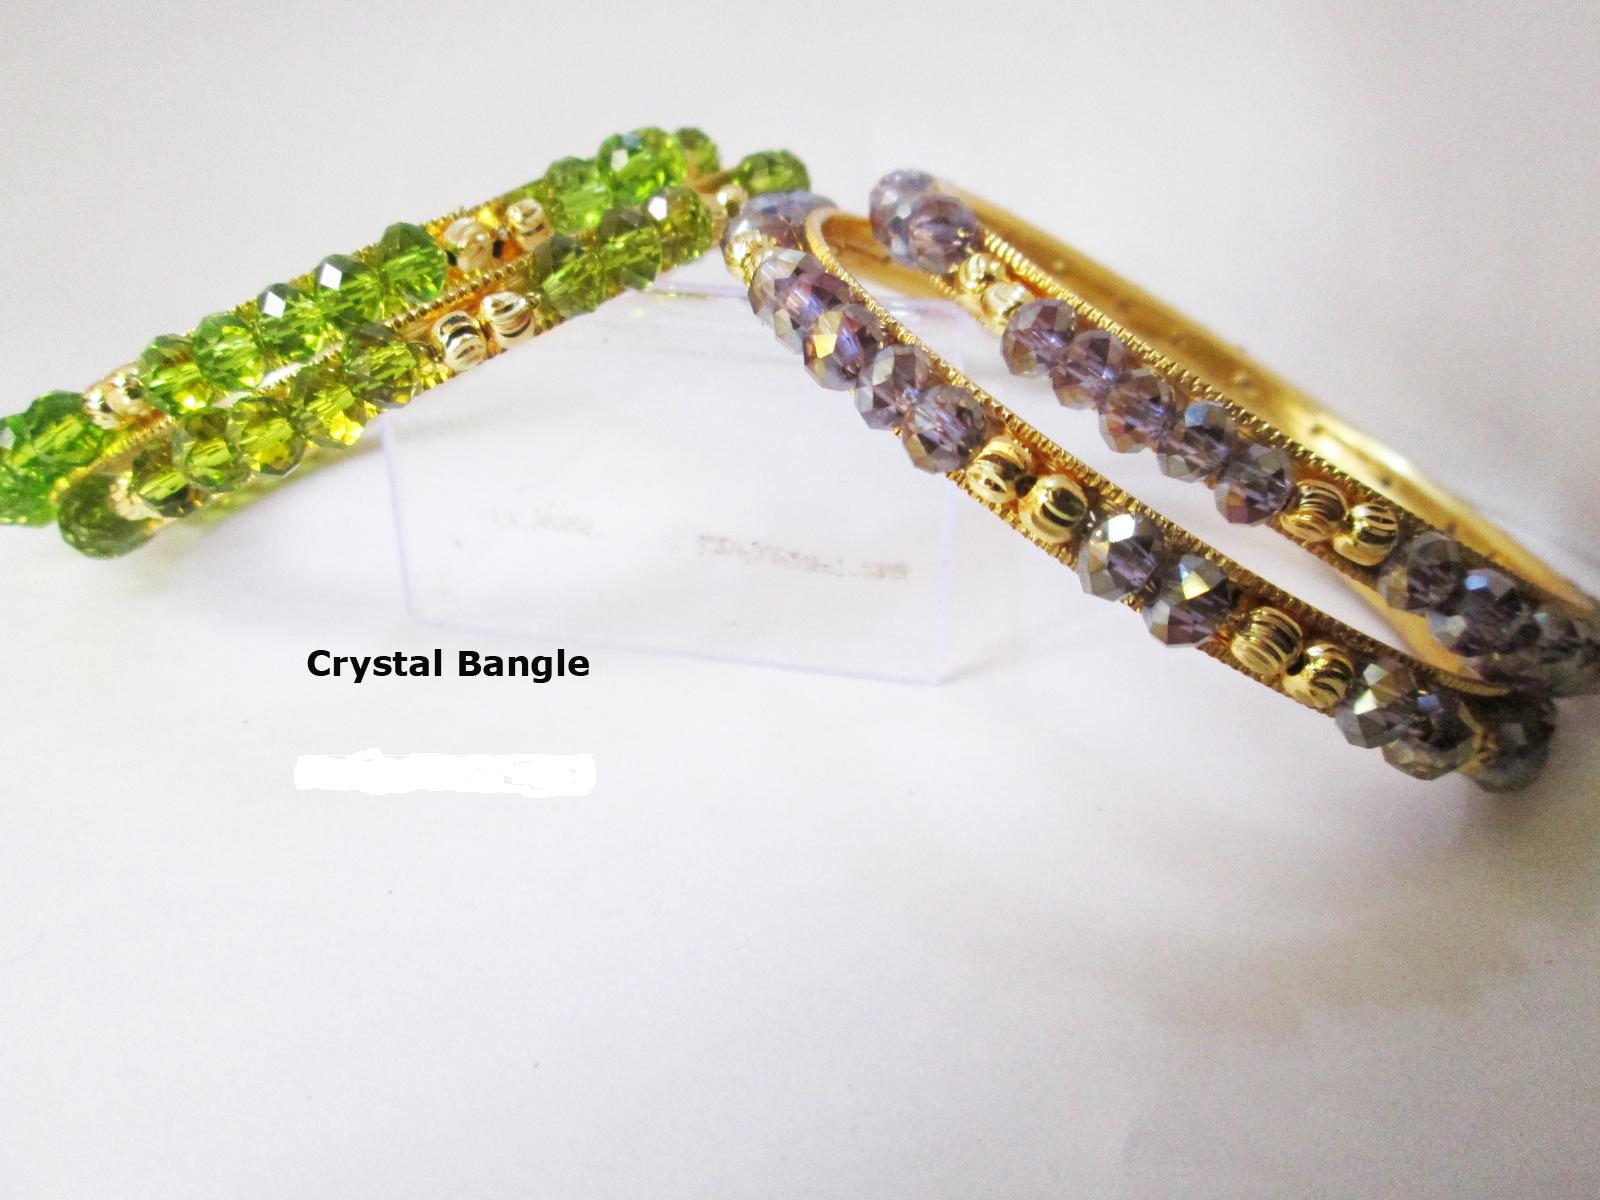 Crystal Bangle